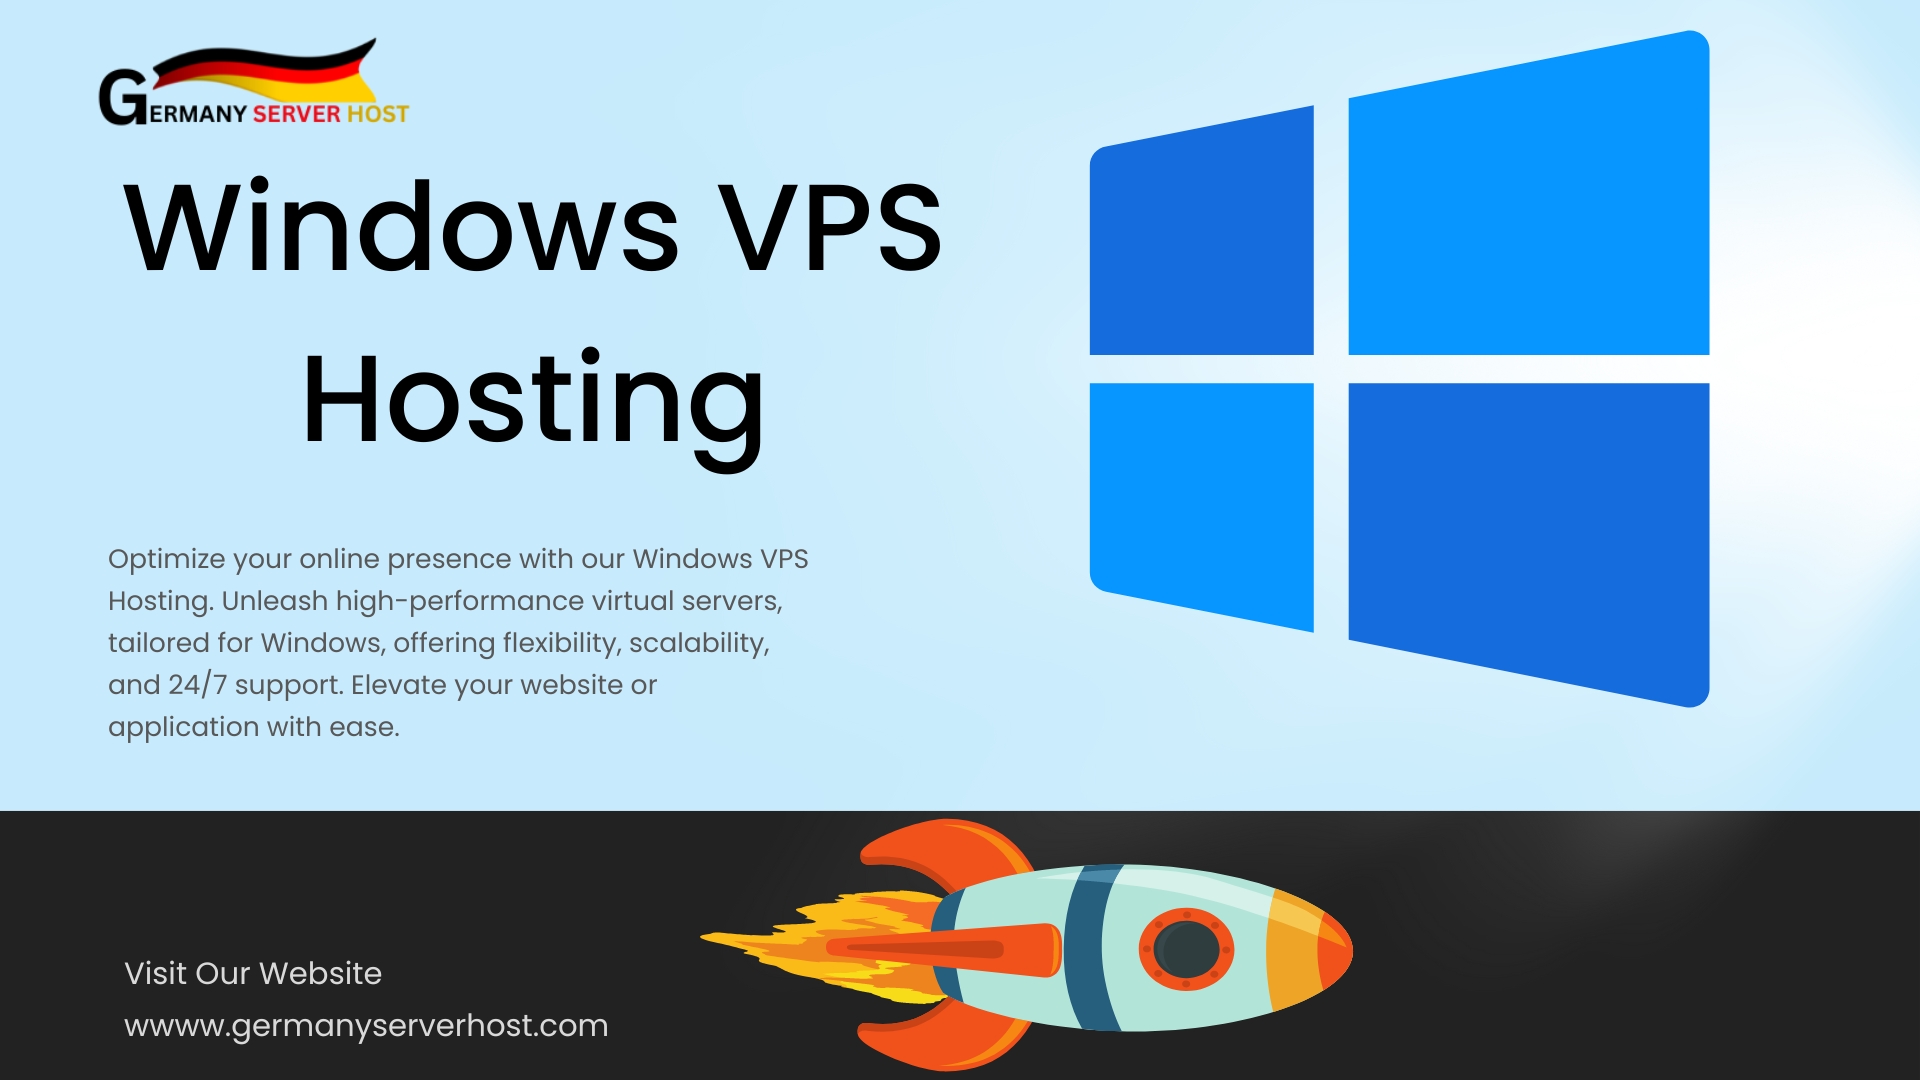 Windows VPS Hosting